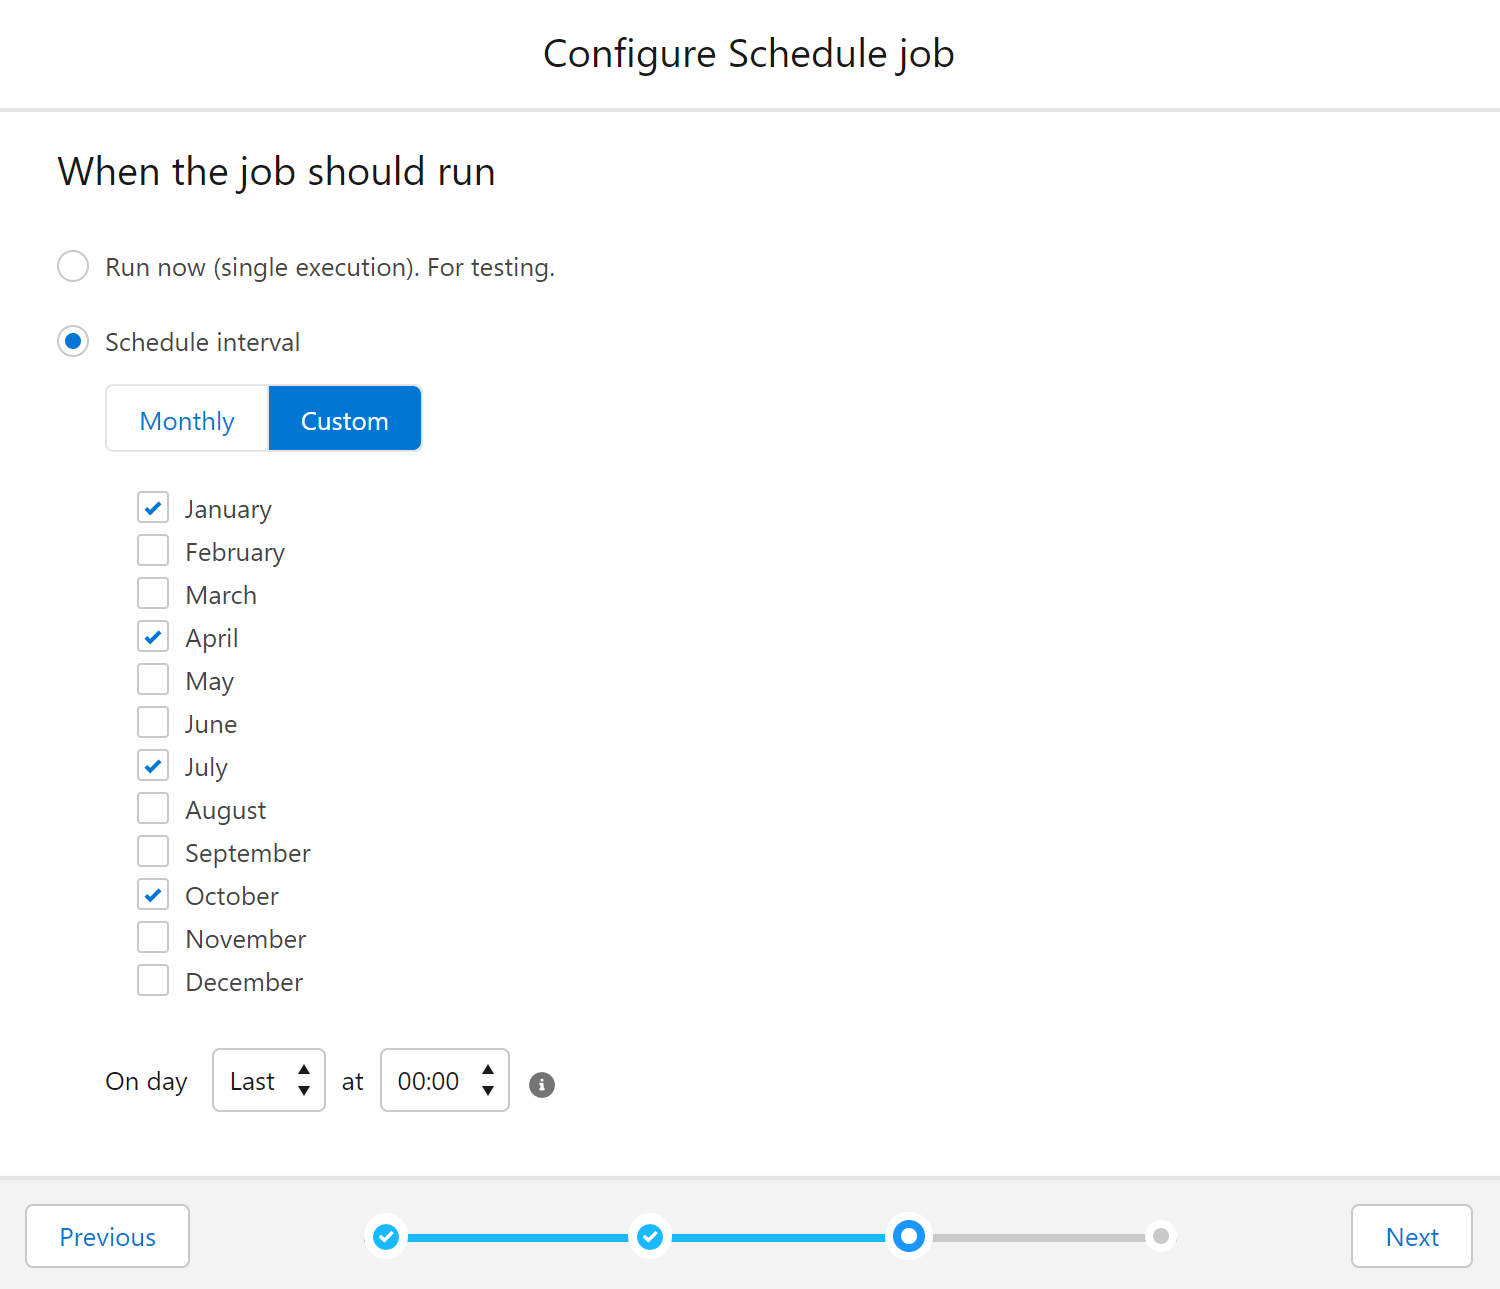 Configure schedule job interval